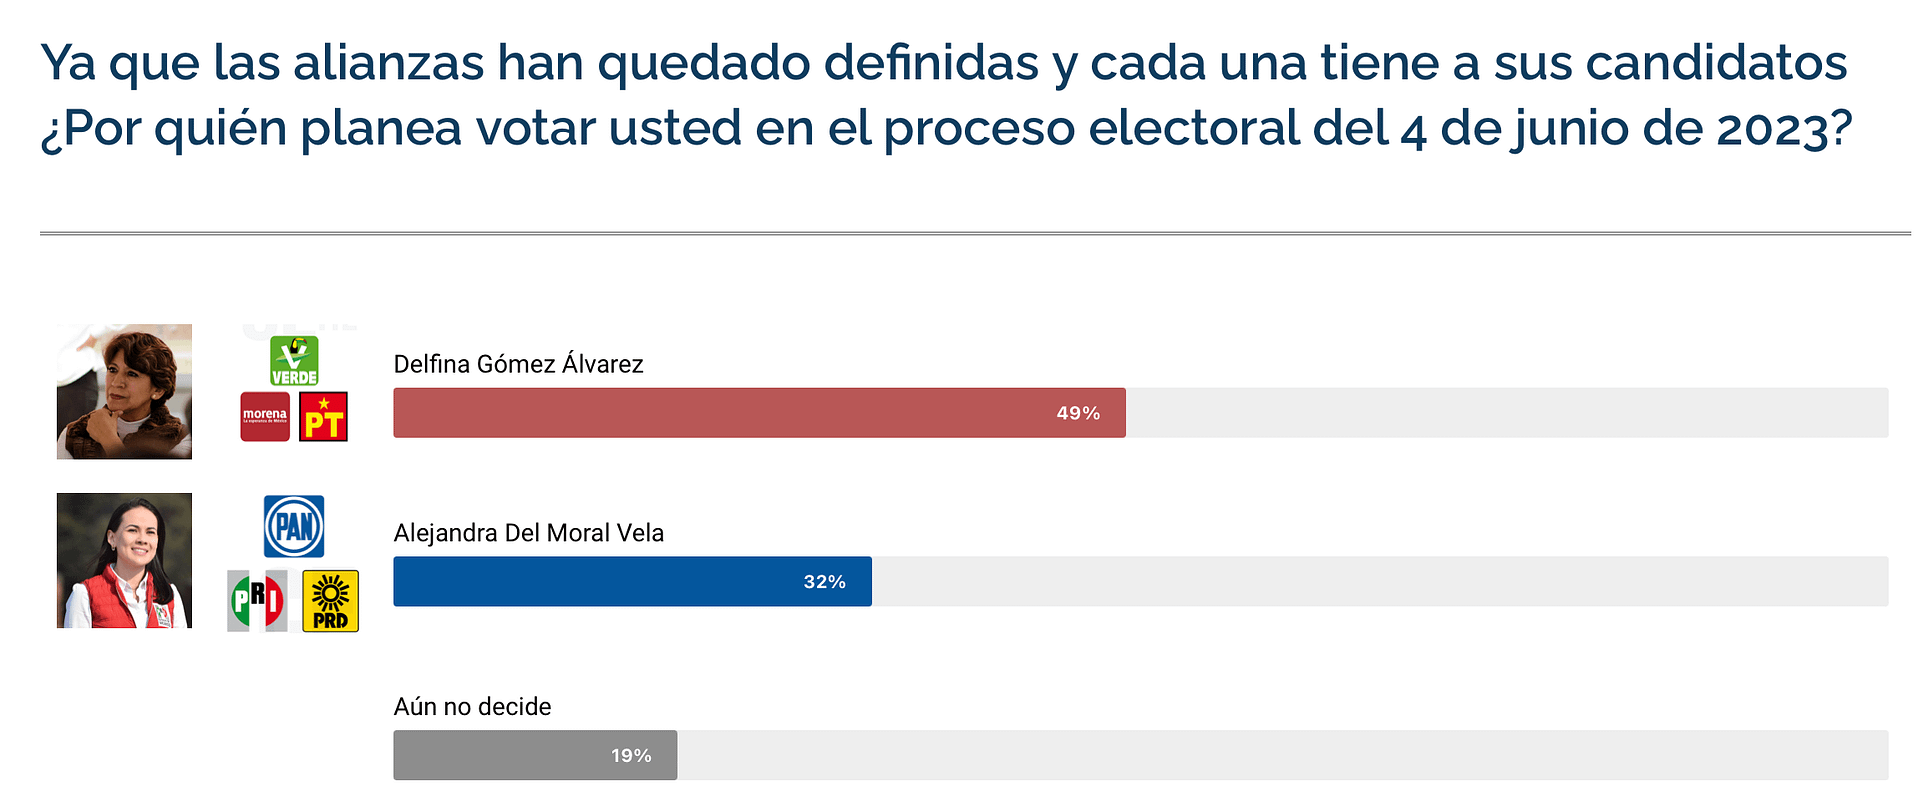 Alejandra Del Moral tiene una diferencia de 17% con Delfina Gómez.